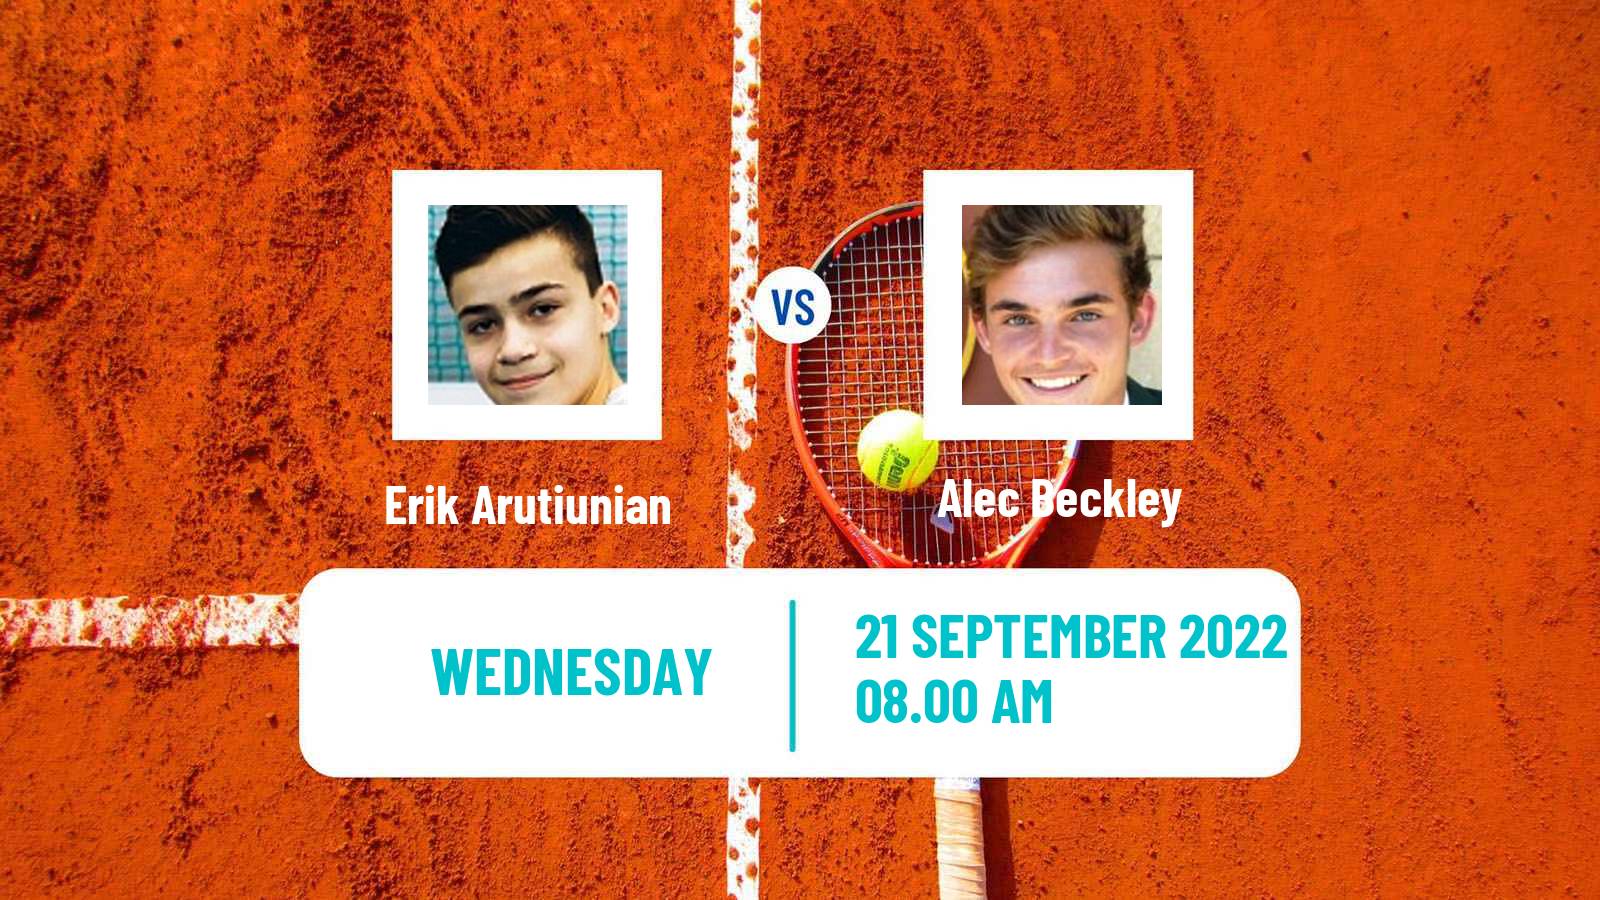 Tennis ITF Tournaments Erik Arutiunian - Alec Beckley